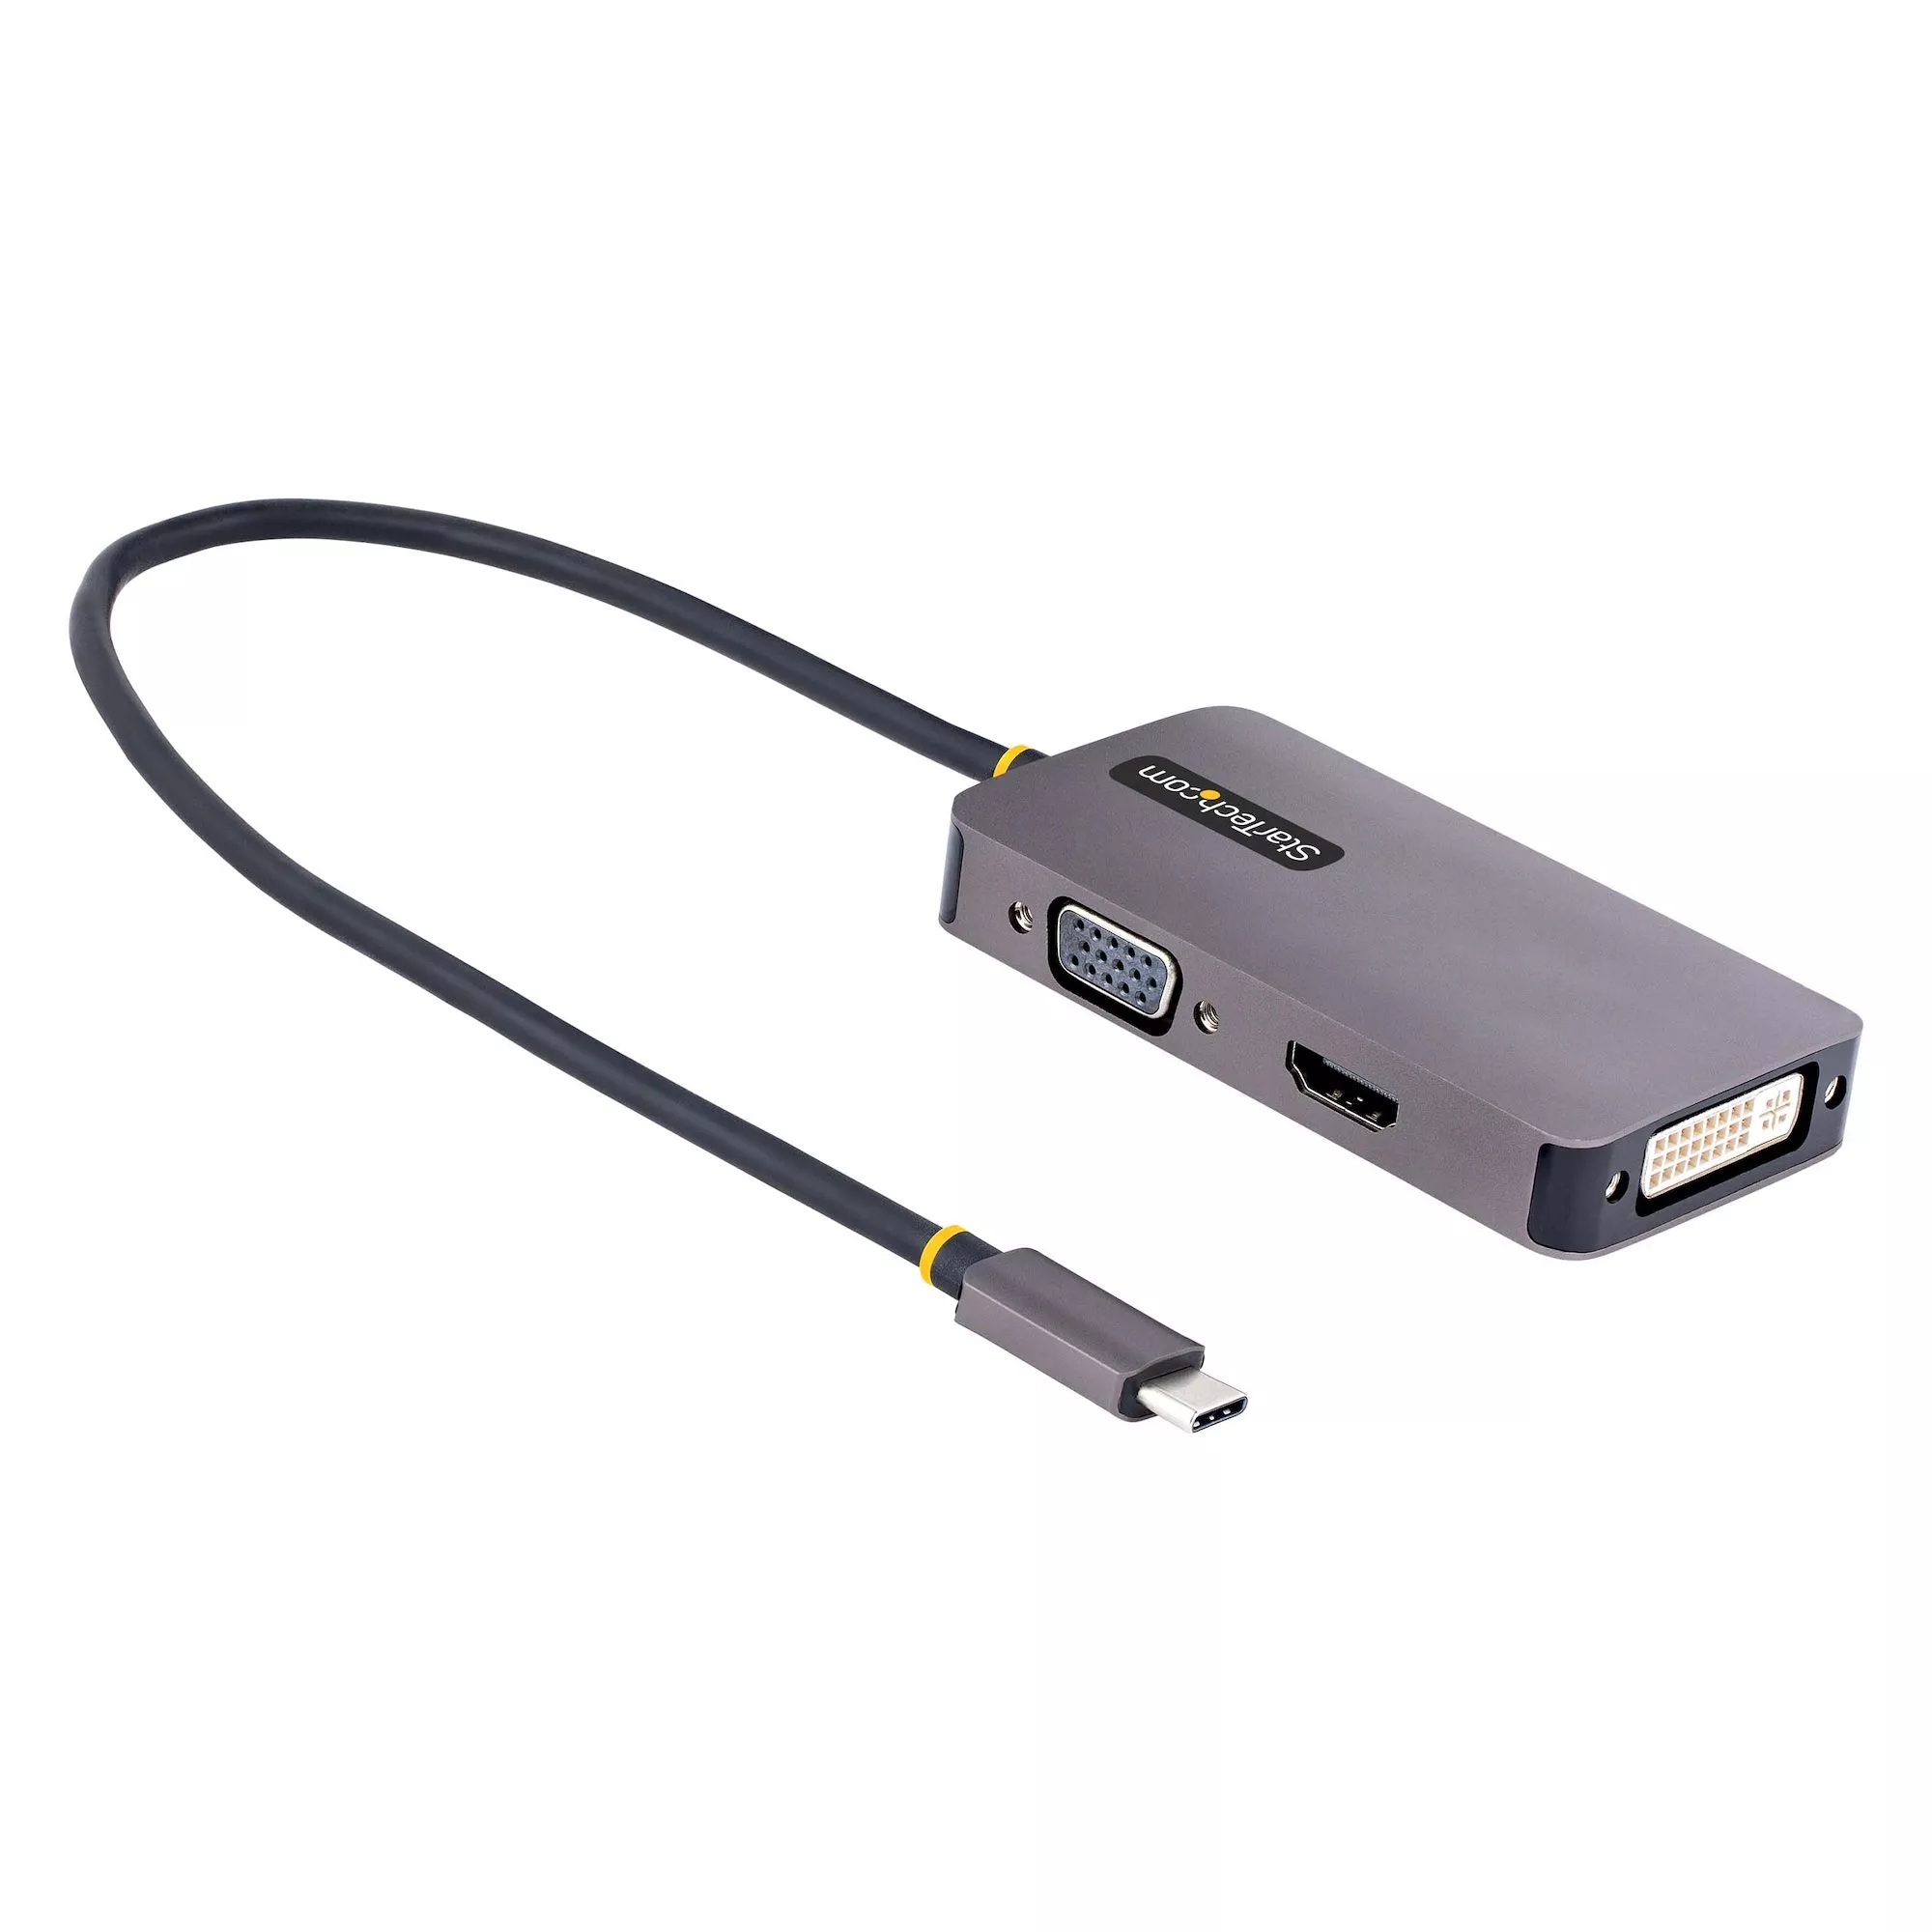 Achat StarTech.com Adaptateur USB C vers HDMI VGA - Dock USB au meilleur prix